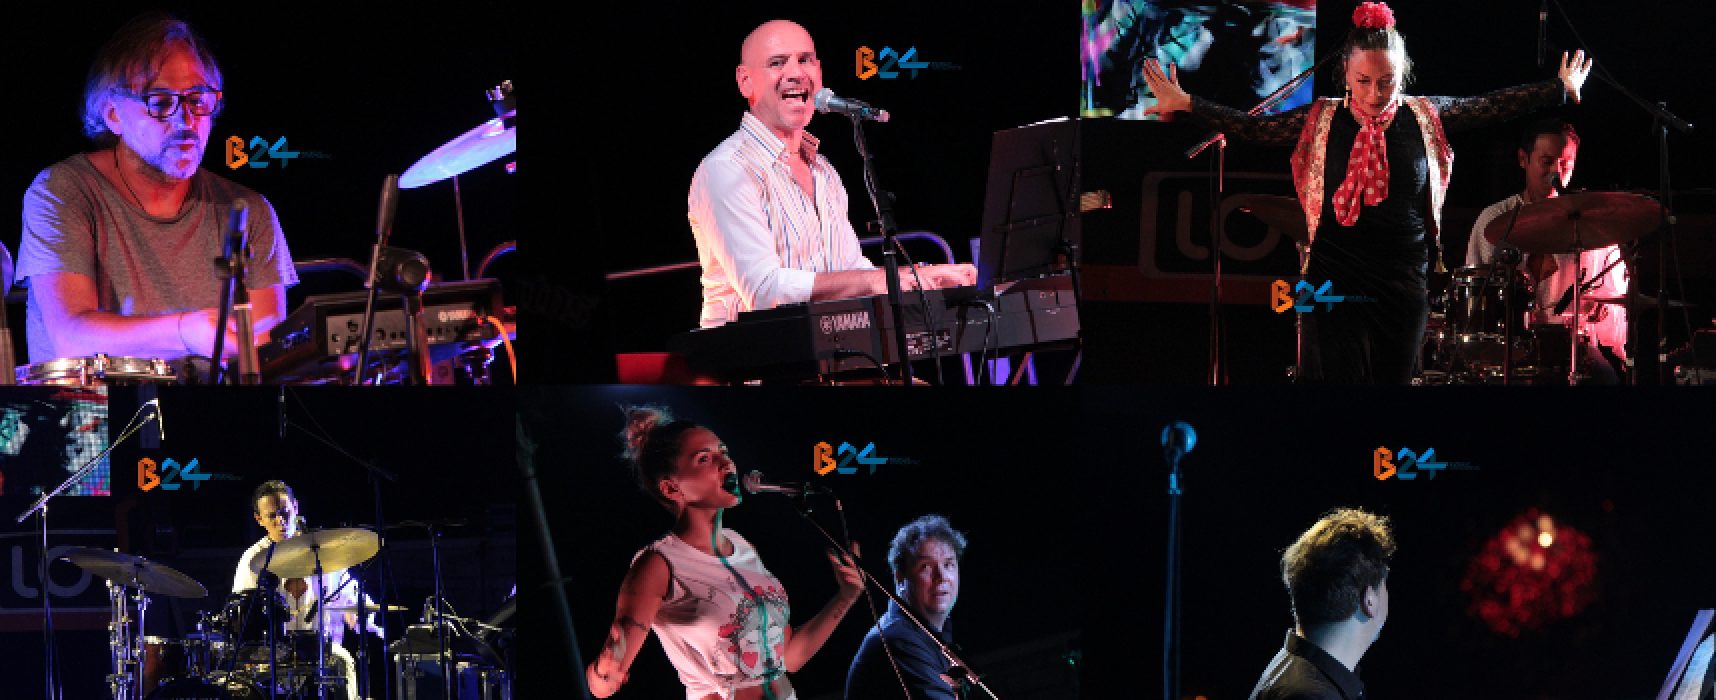 Bisceglie Jazz Festival, il FOTO-racconto della seconda serata con Rosini e Varela